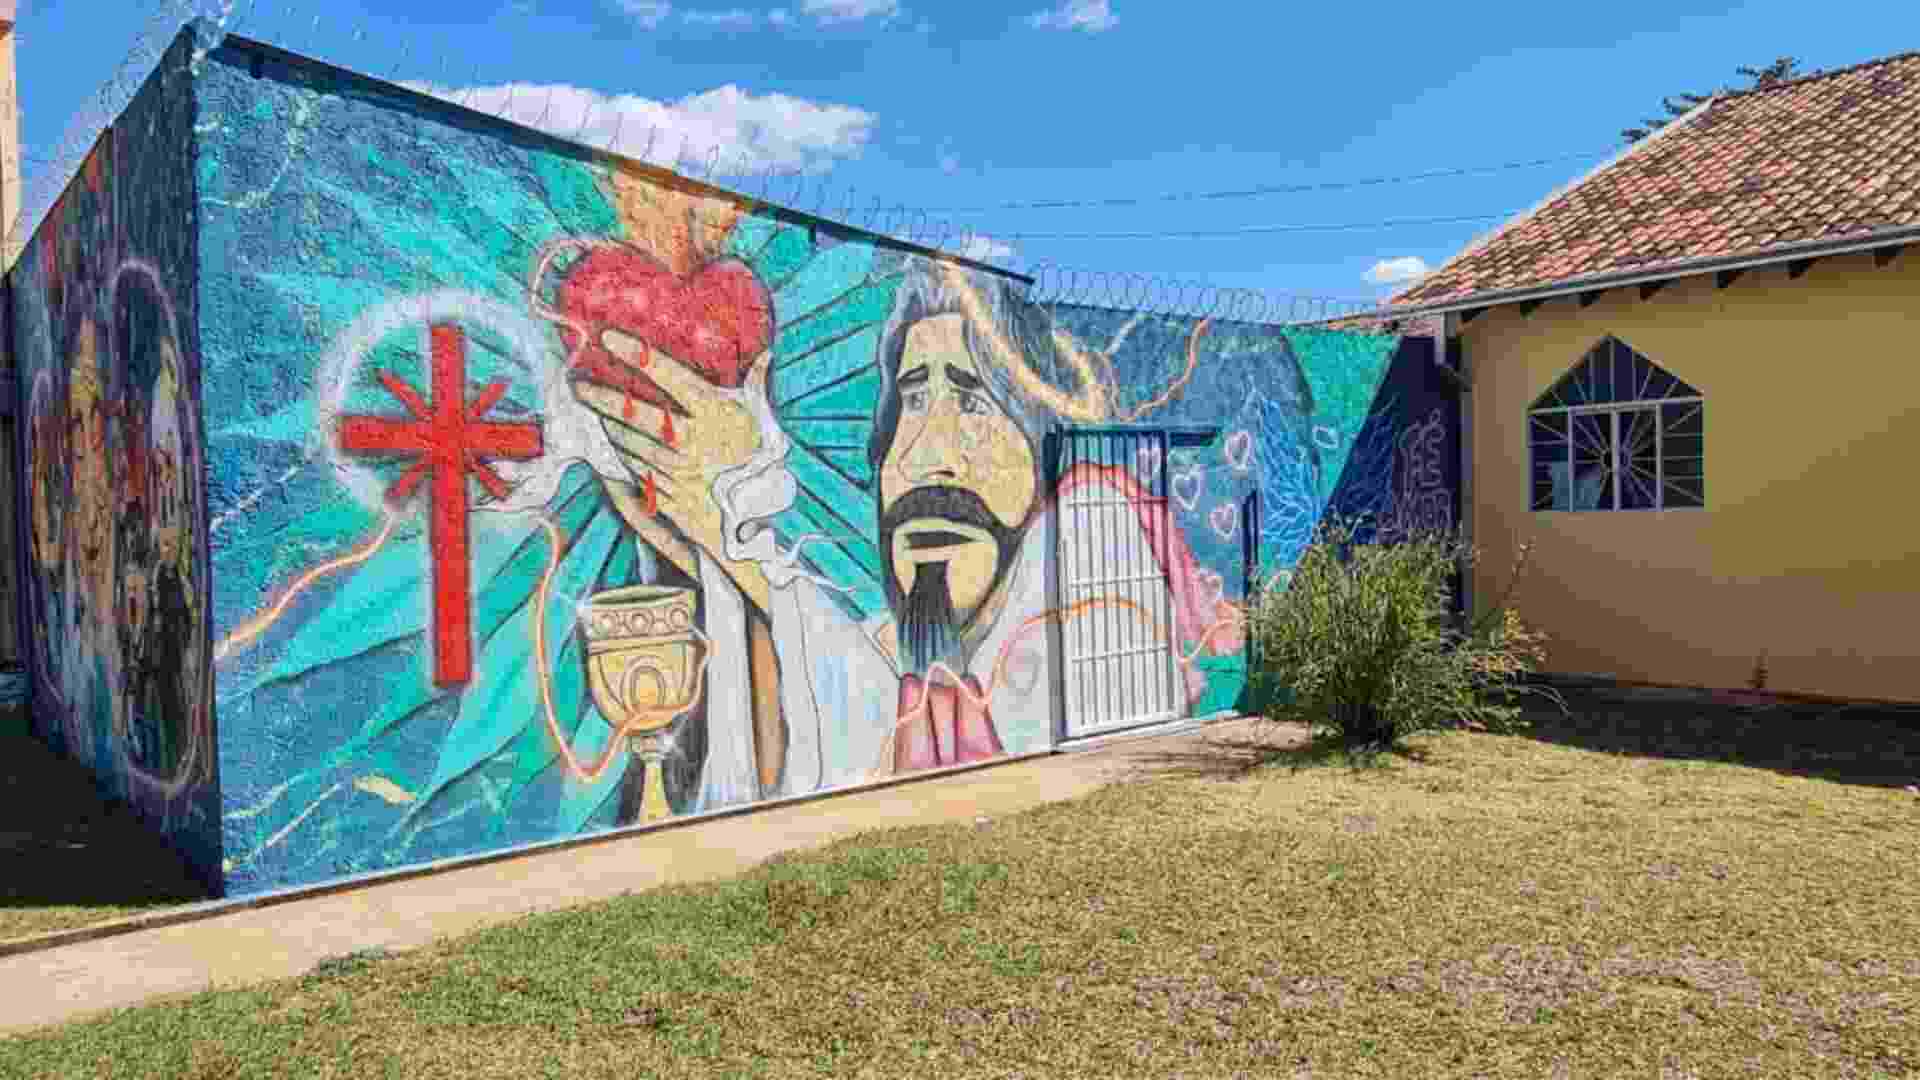 Inspirado pela gratidão, artista dá vida aos muros do Cotolengo em comemoração aos seus 27 anos